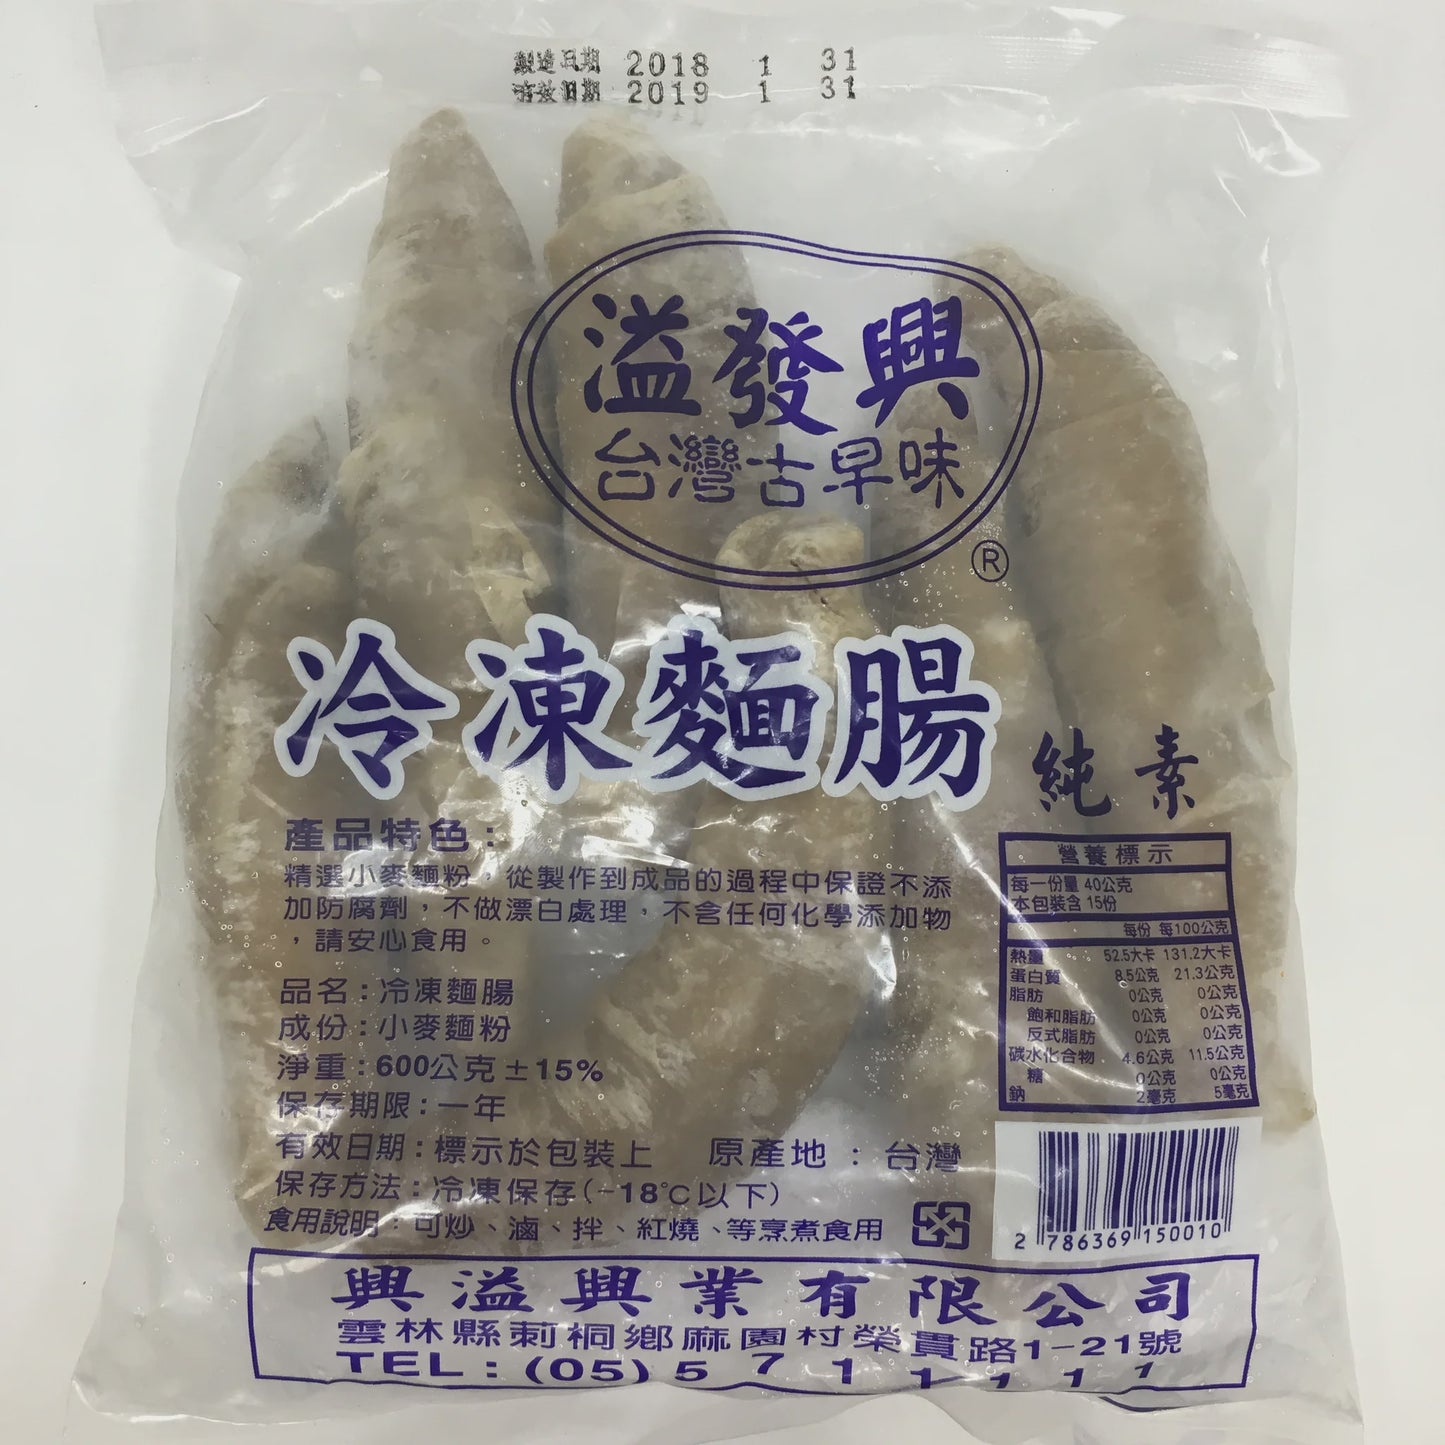 #3939 麵腸[興溢] Veggie Imitation Sausage (里仁) 600g/包, 20/cs